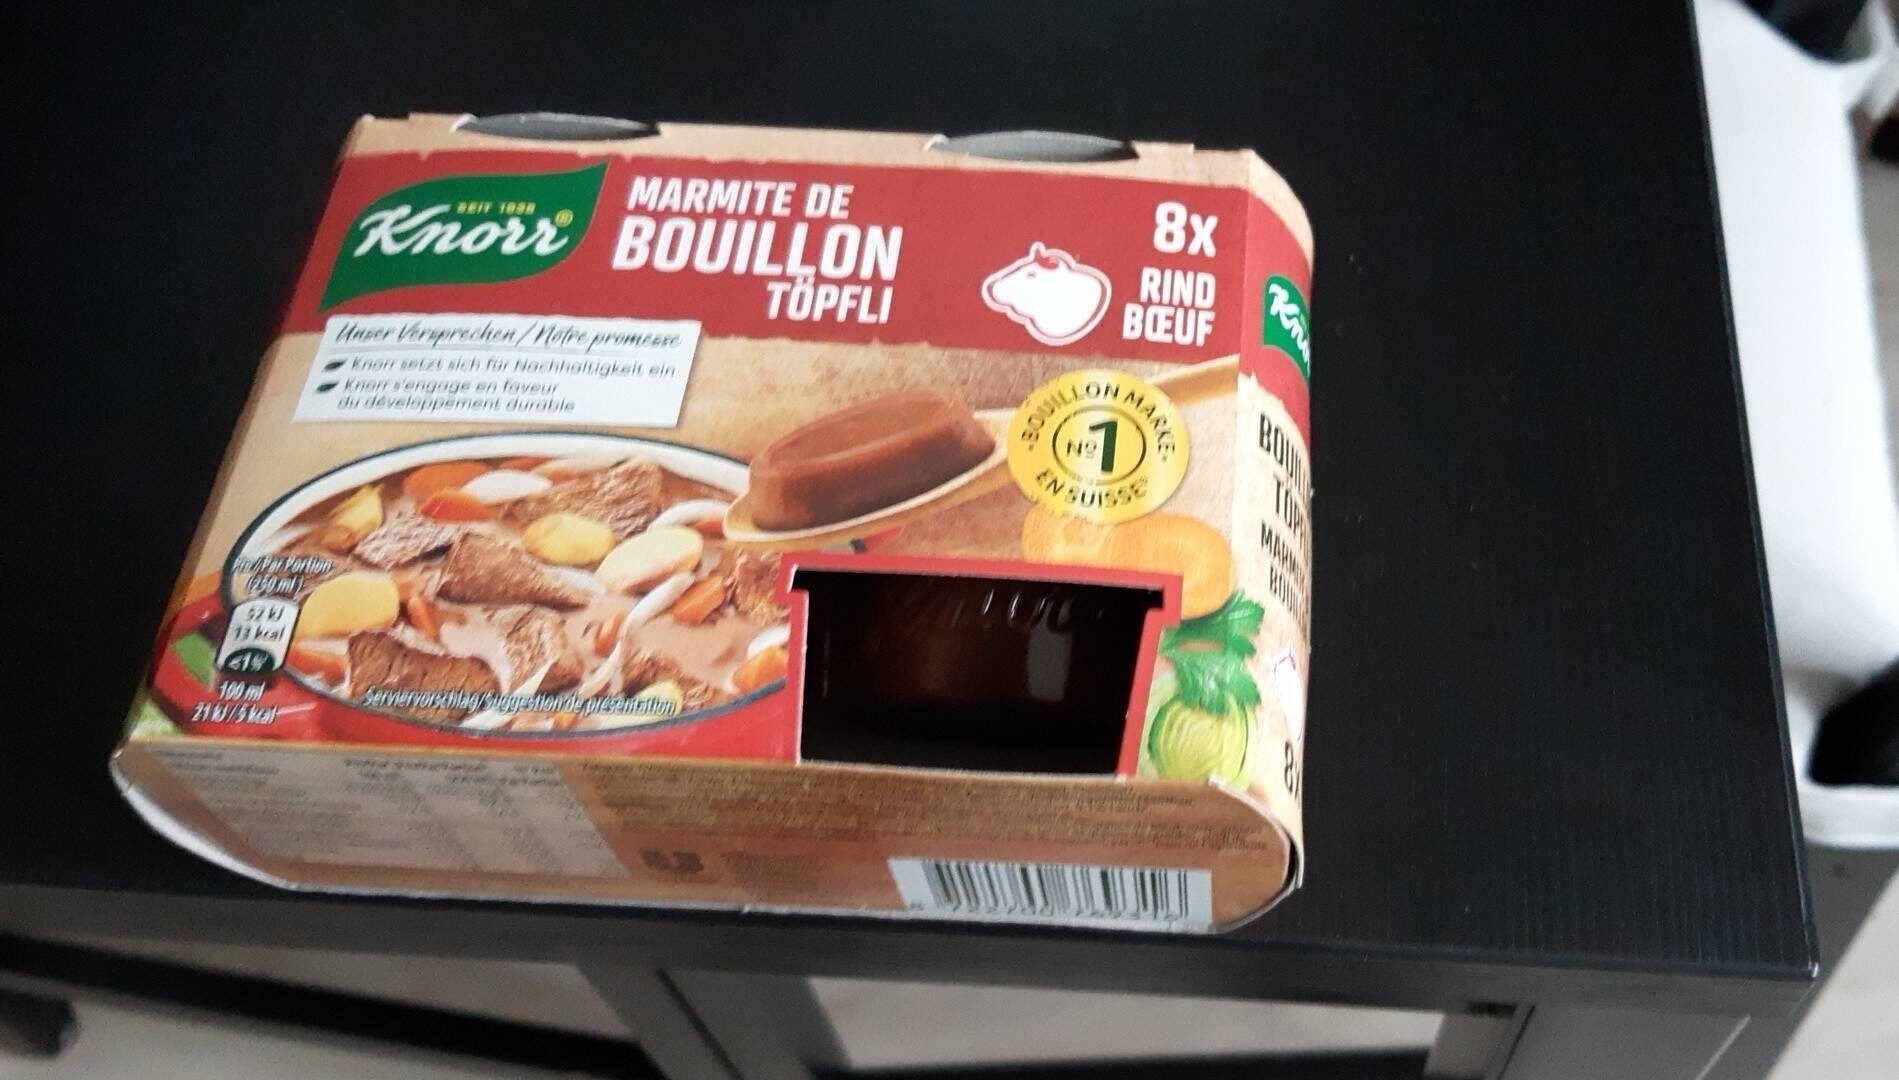 Marmite de bouillon - Produkt - fr